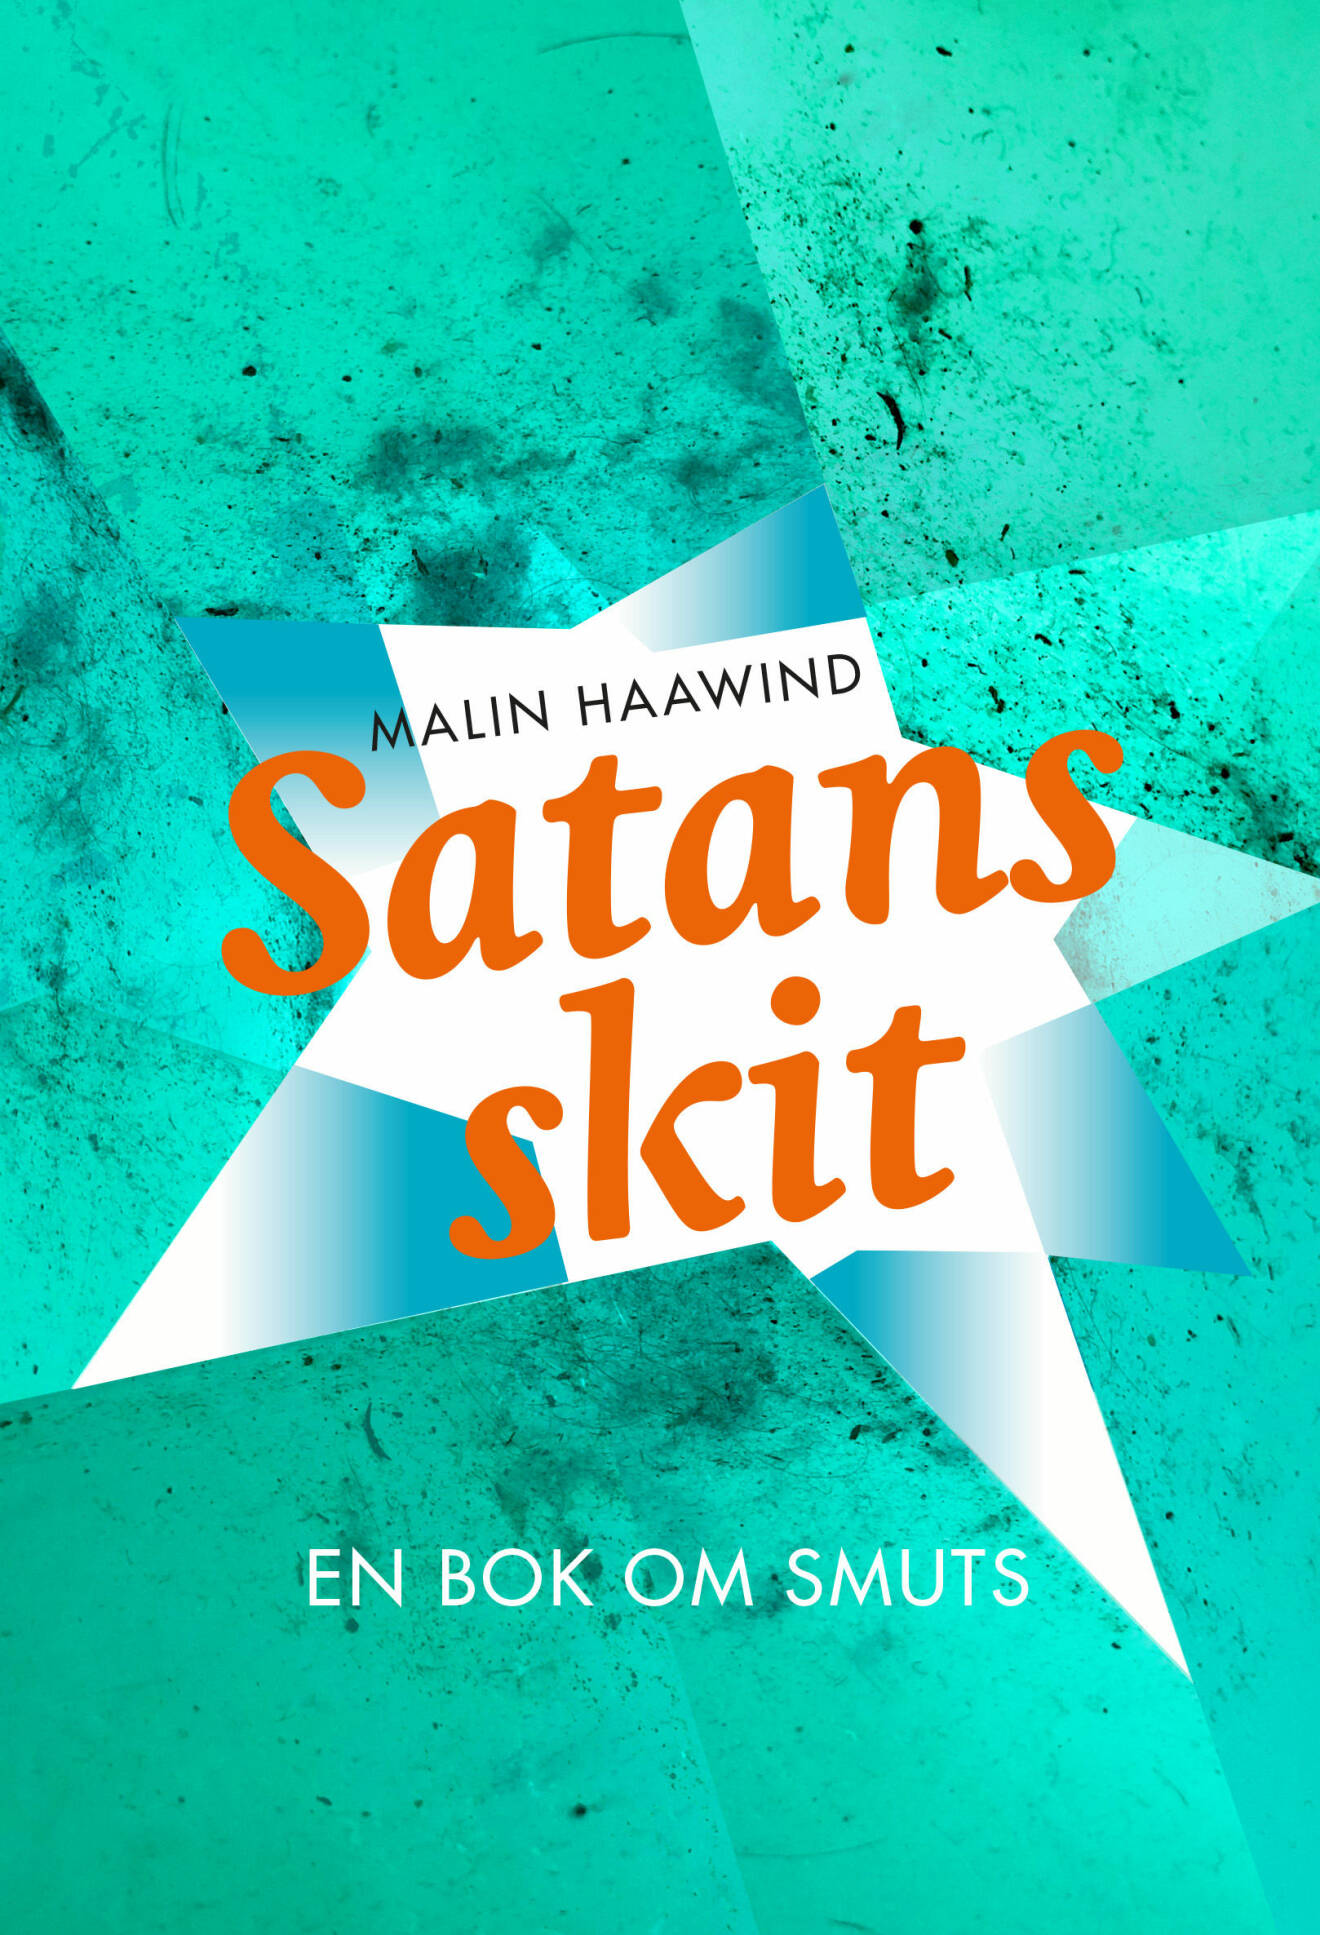 Omslaget till Malin Haawinds bok "Satans skit – en bok om smuts".